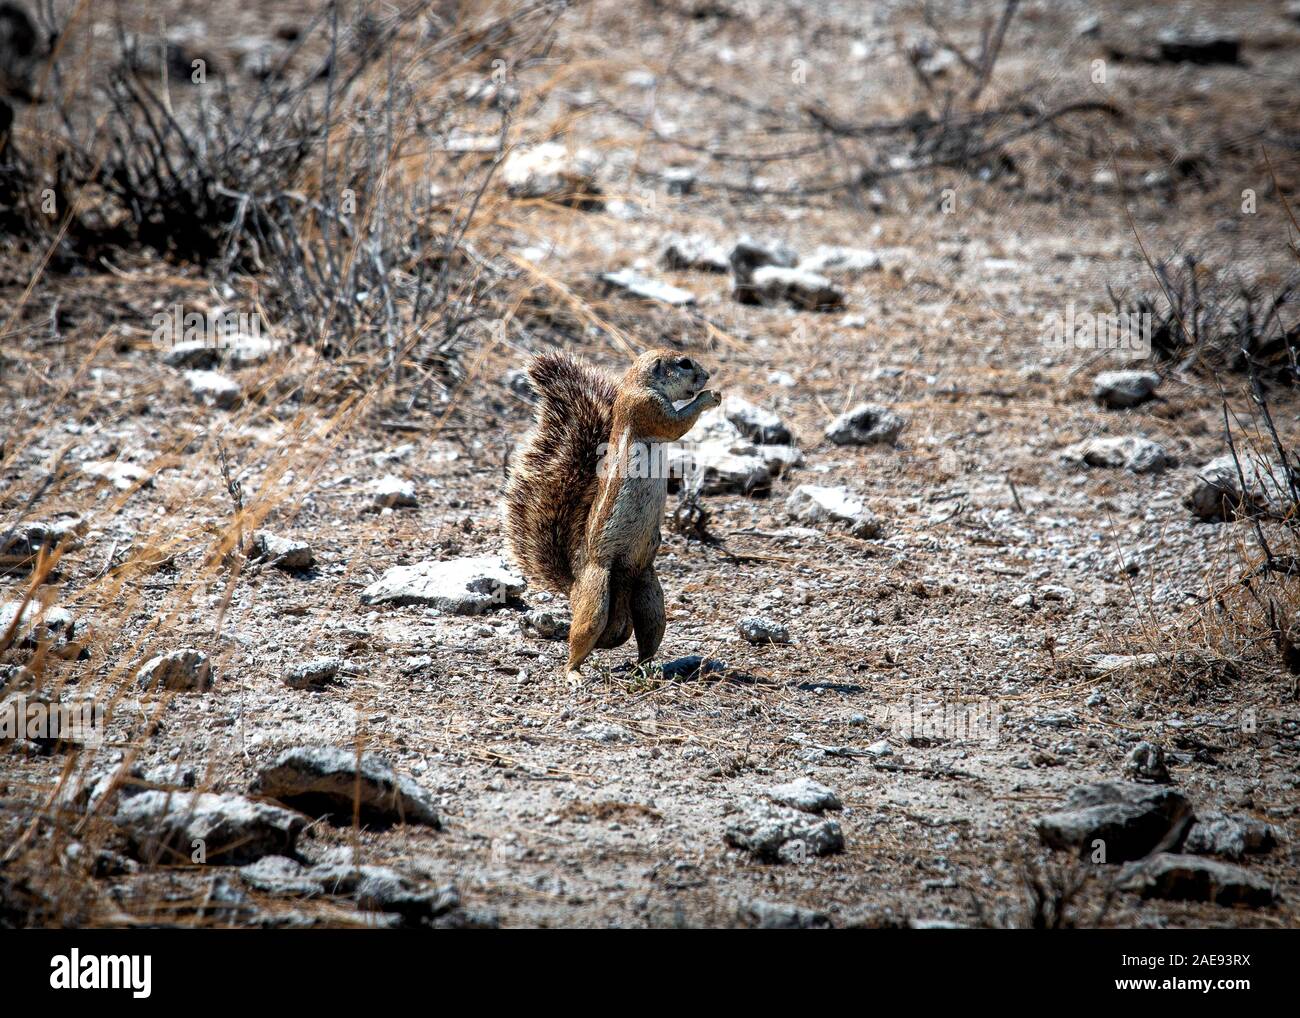 Xerus inauris - Cape scoiattolo di terra Foto Stock